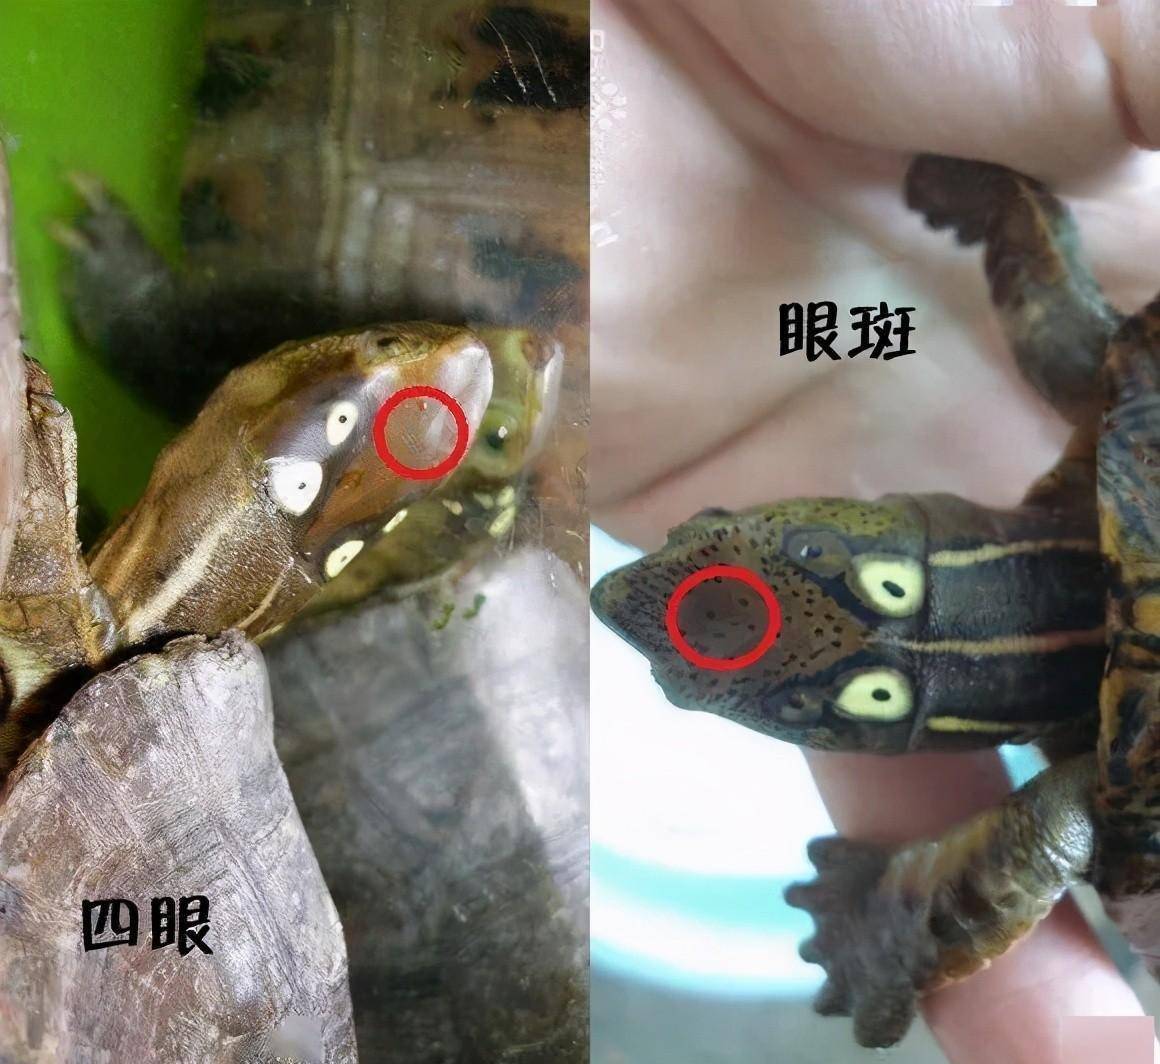 眼斑龟属:大自然赋予的神奇眼睛,美丽而特别